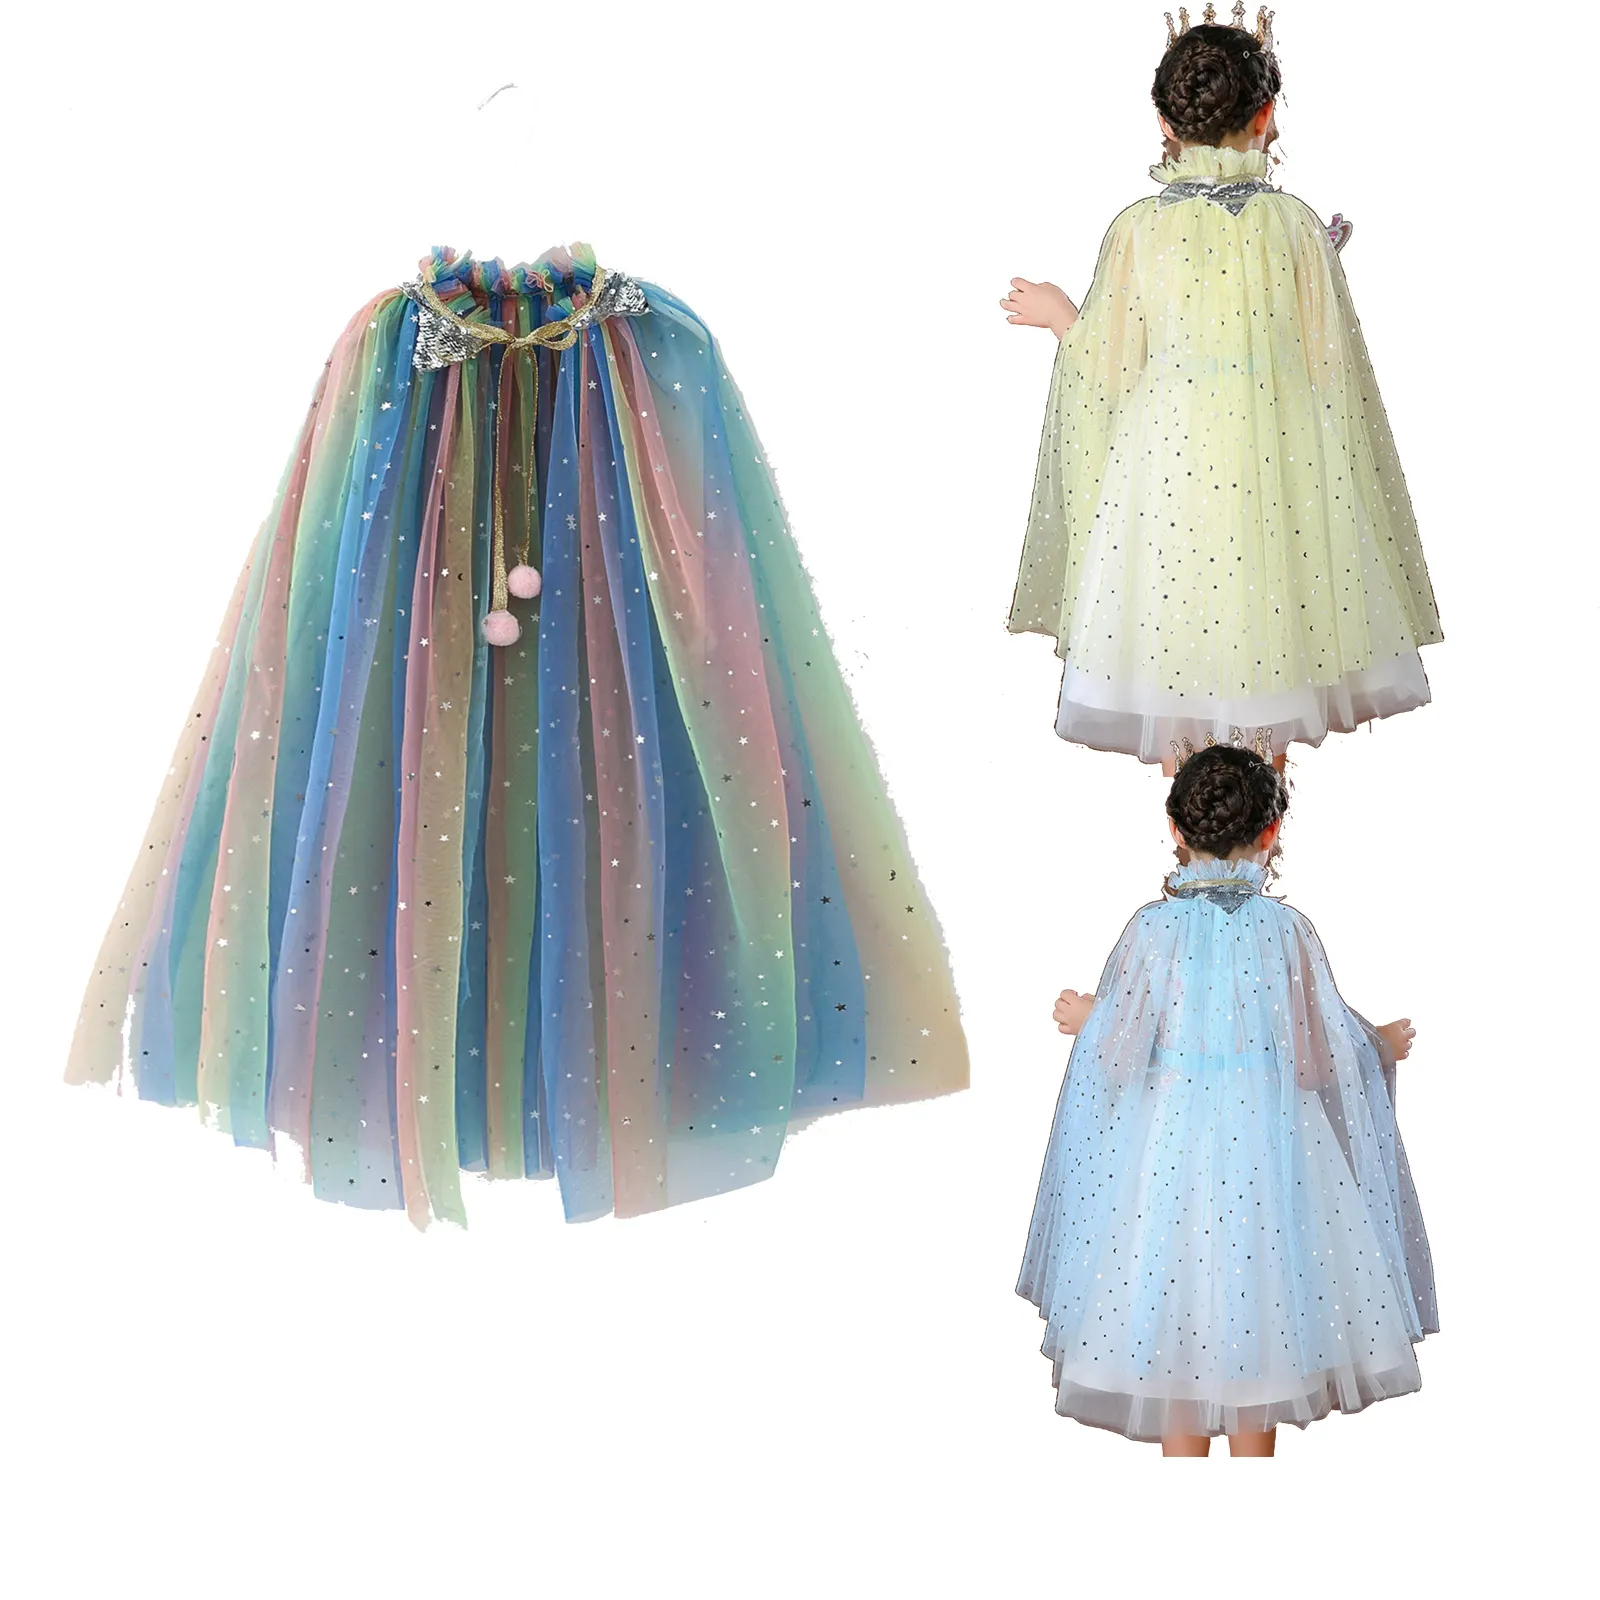 Kinder Farbe Schal Mädchen Mesh Prinzessin Kleid Ein kleines Mädchen Umhang